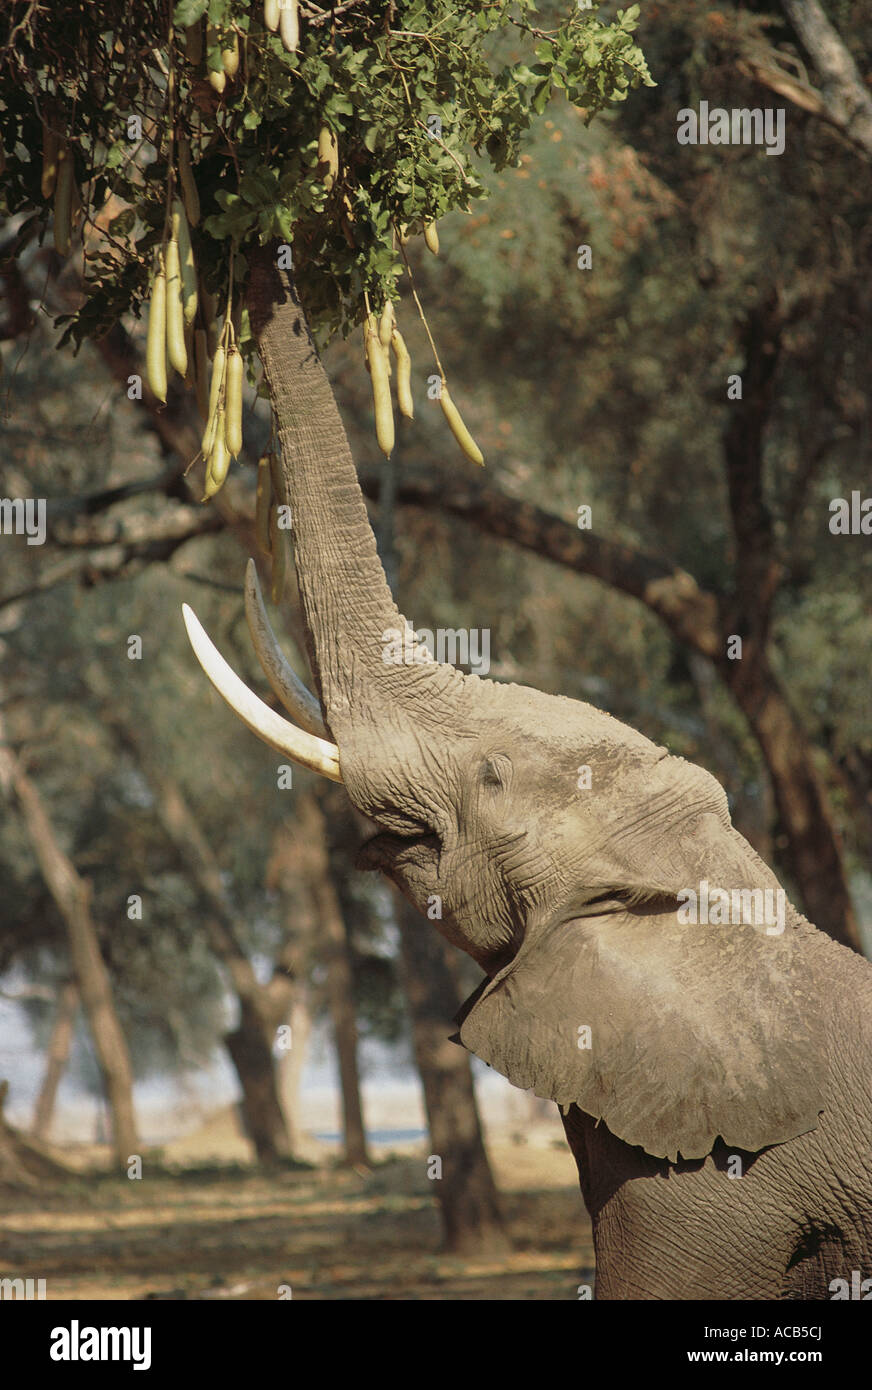 Male Elephant stretching its trunk upwards to browse on Sausage Tree Kigelia africana Mana Pools National Park Zimbabwe Stock Photo